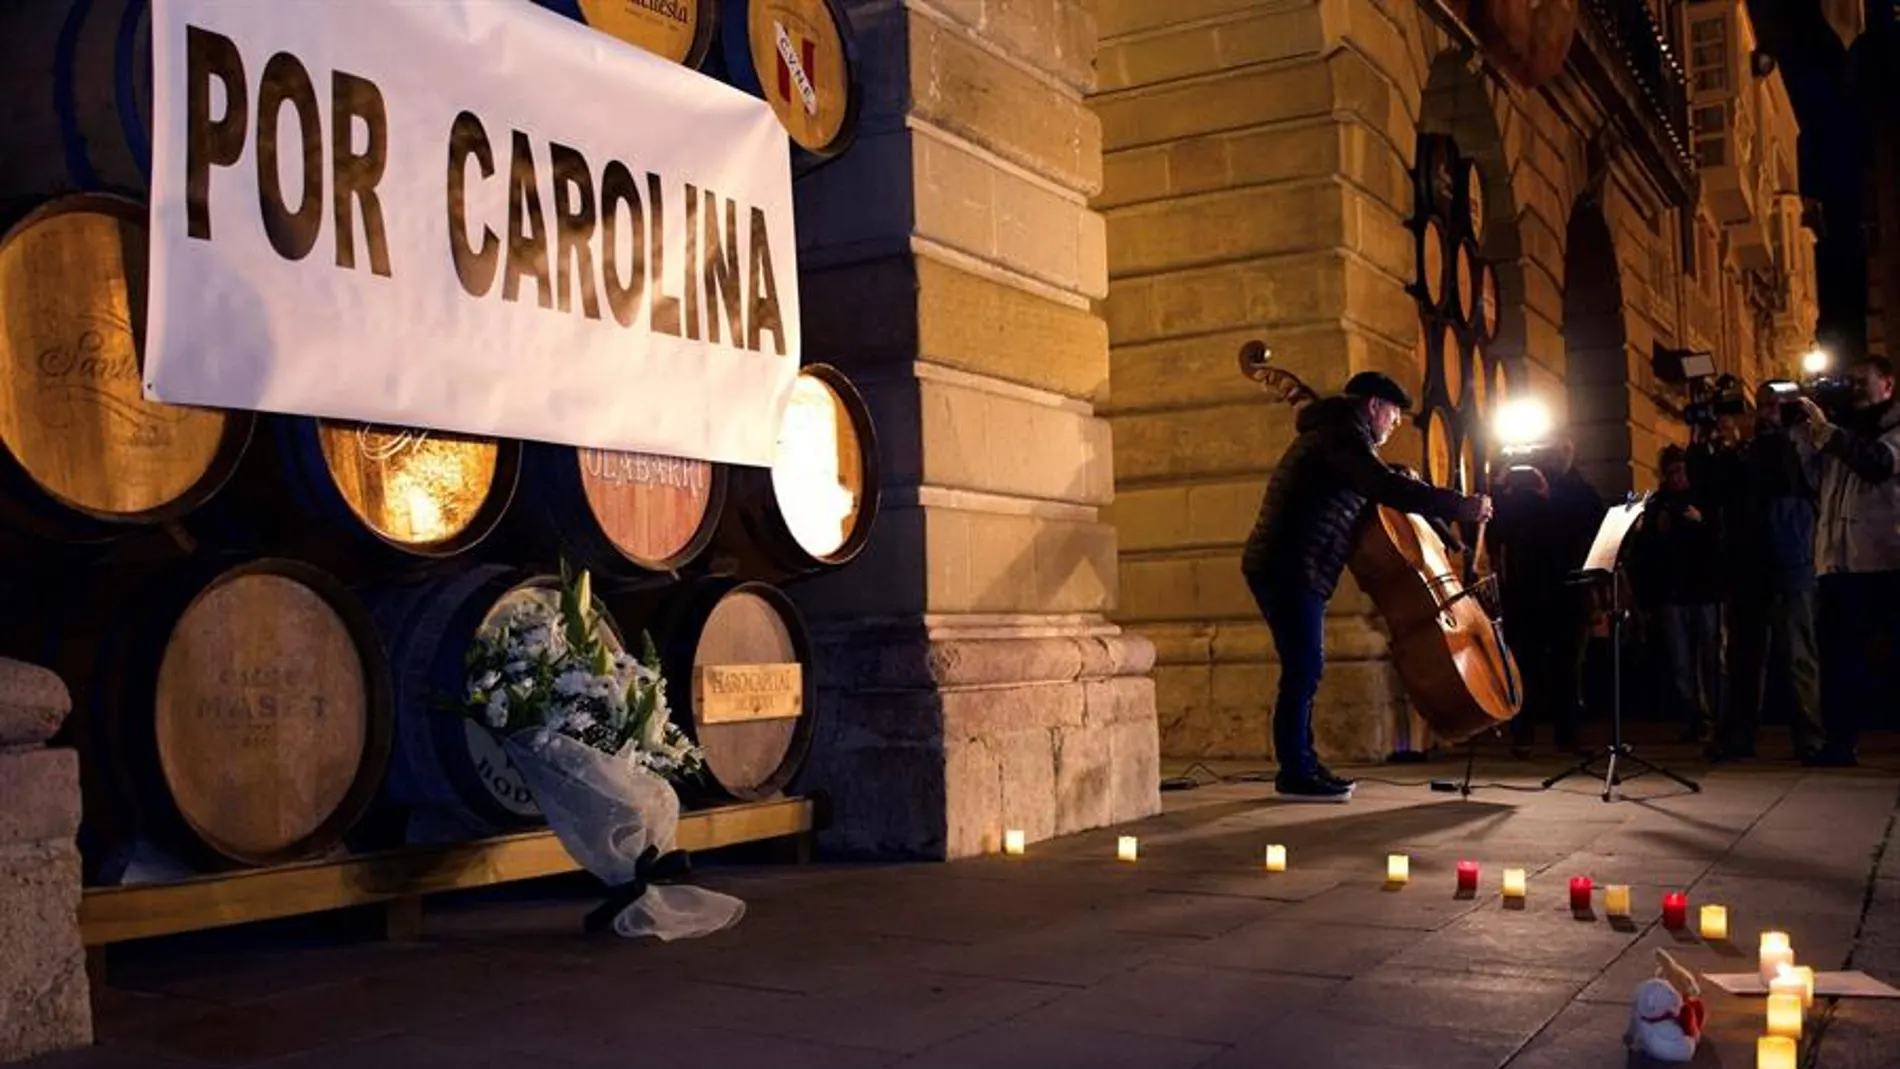  Un momento de la concentración "Por Carolina" en Logroño